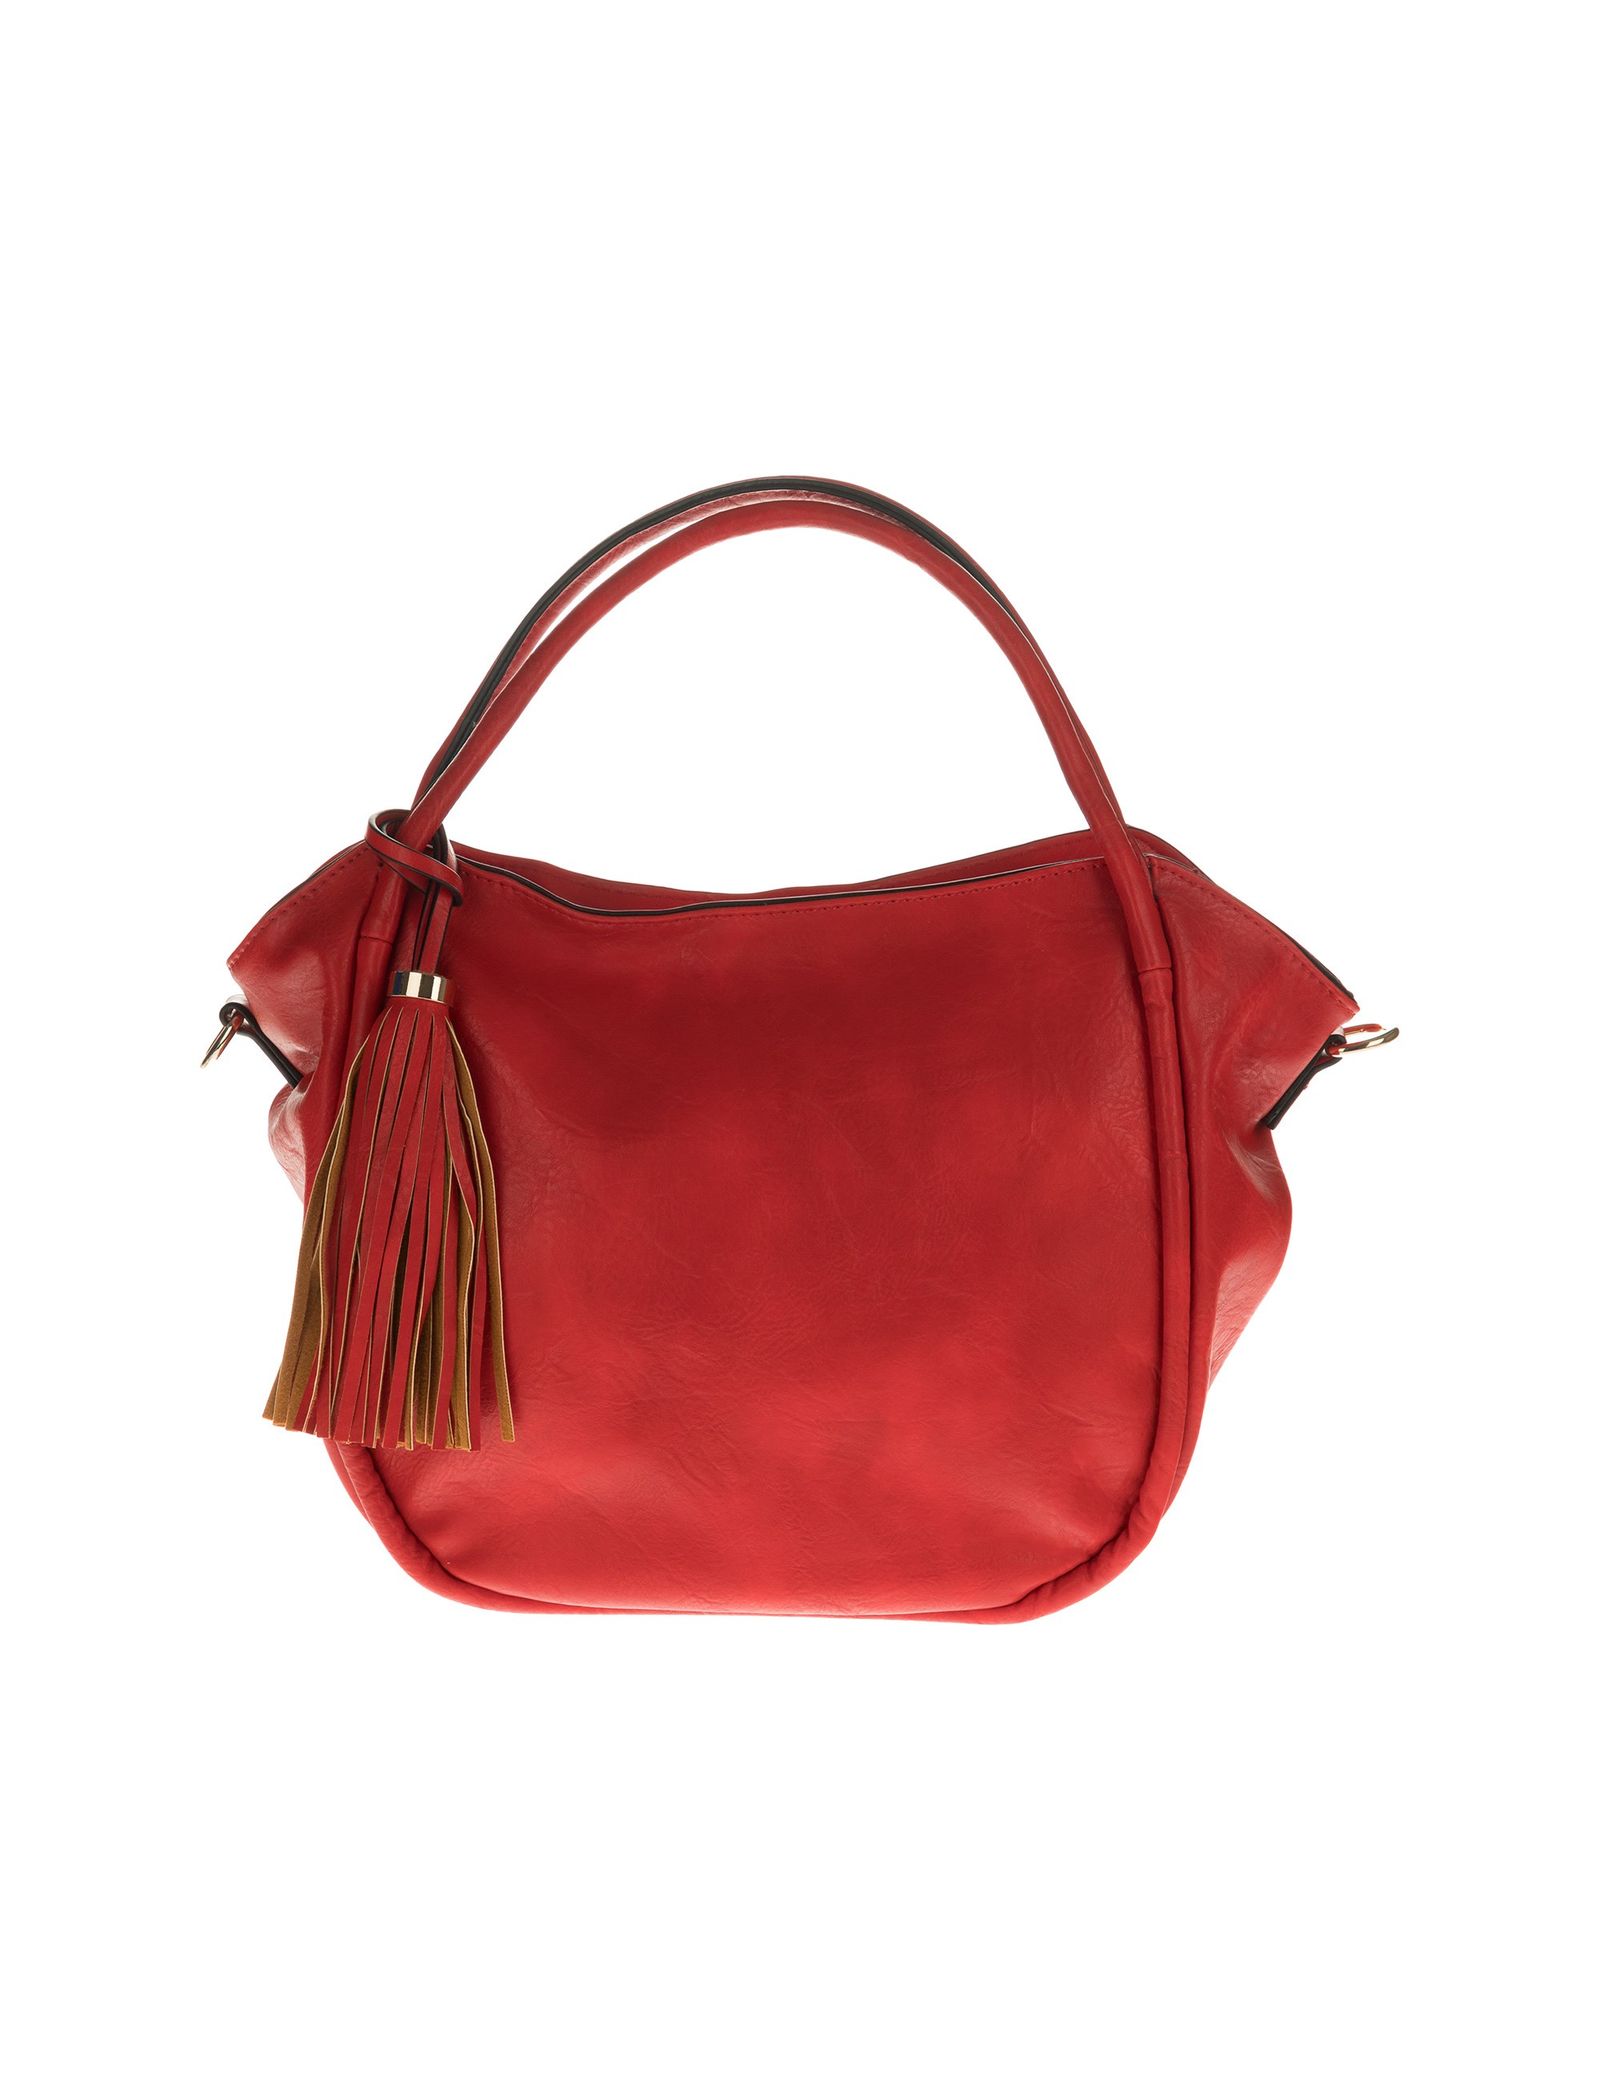 کیف دستی روزمره زنانه - دادلین تک سایز - قرمز  - 2